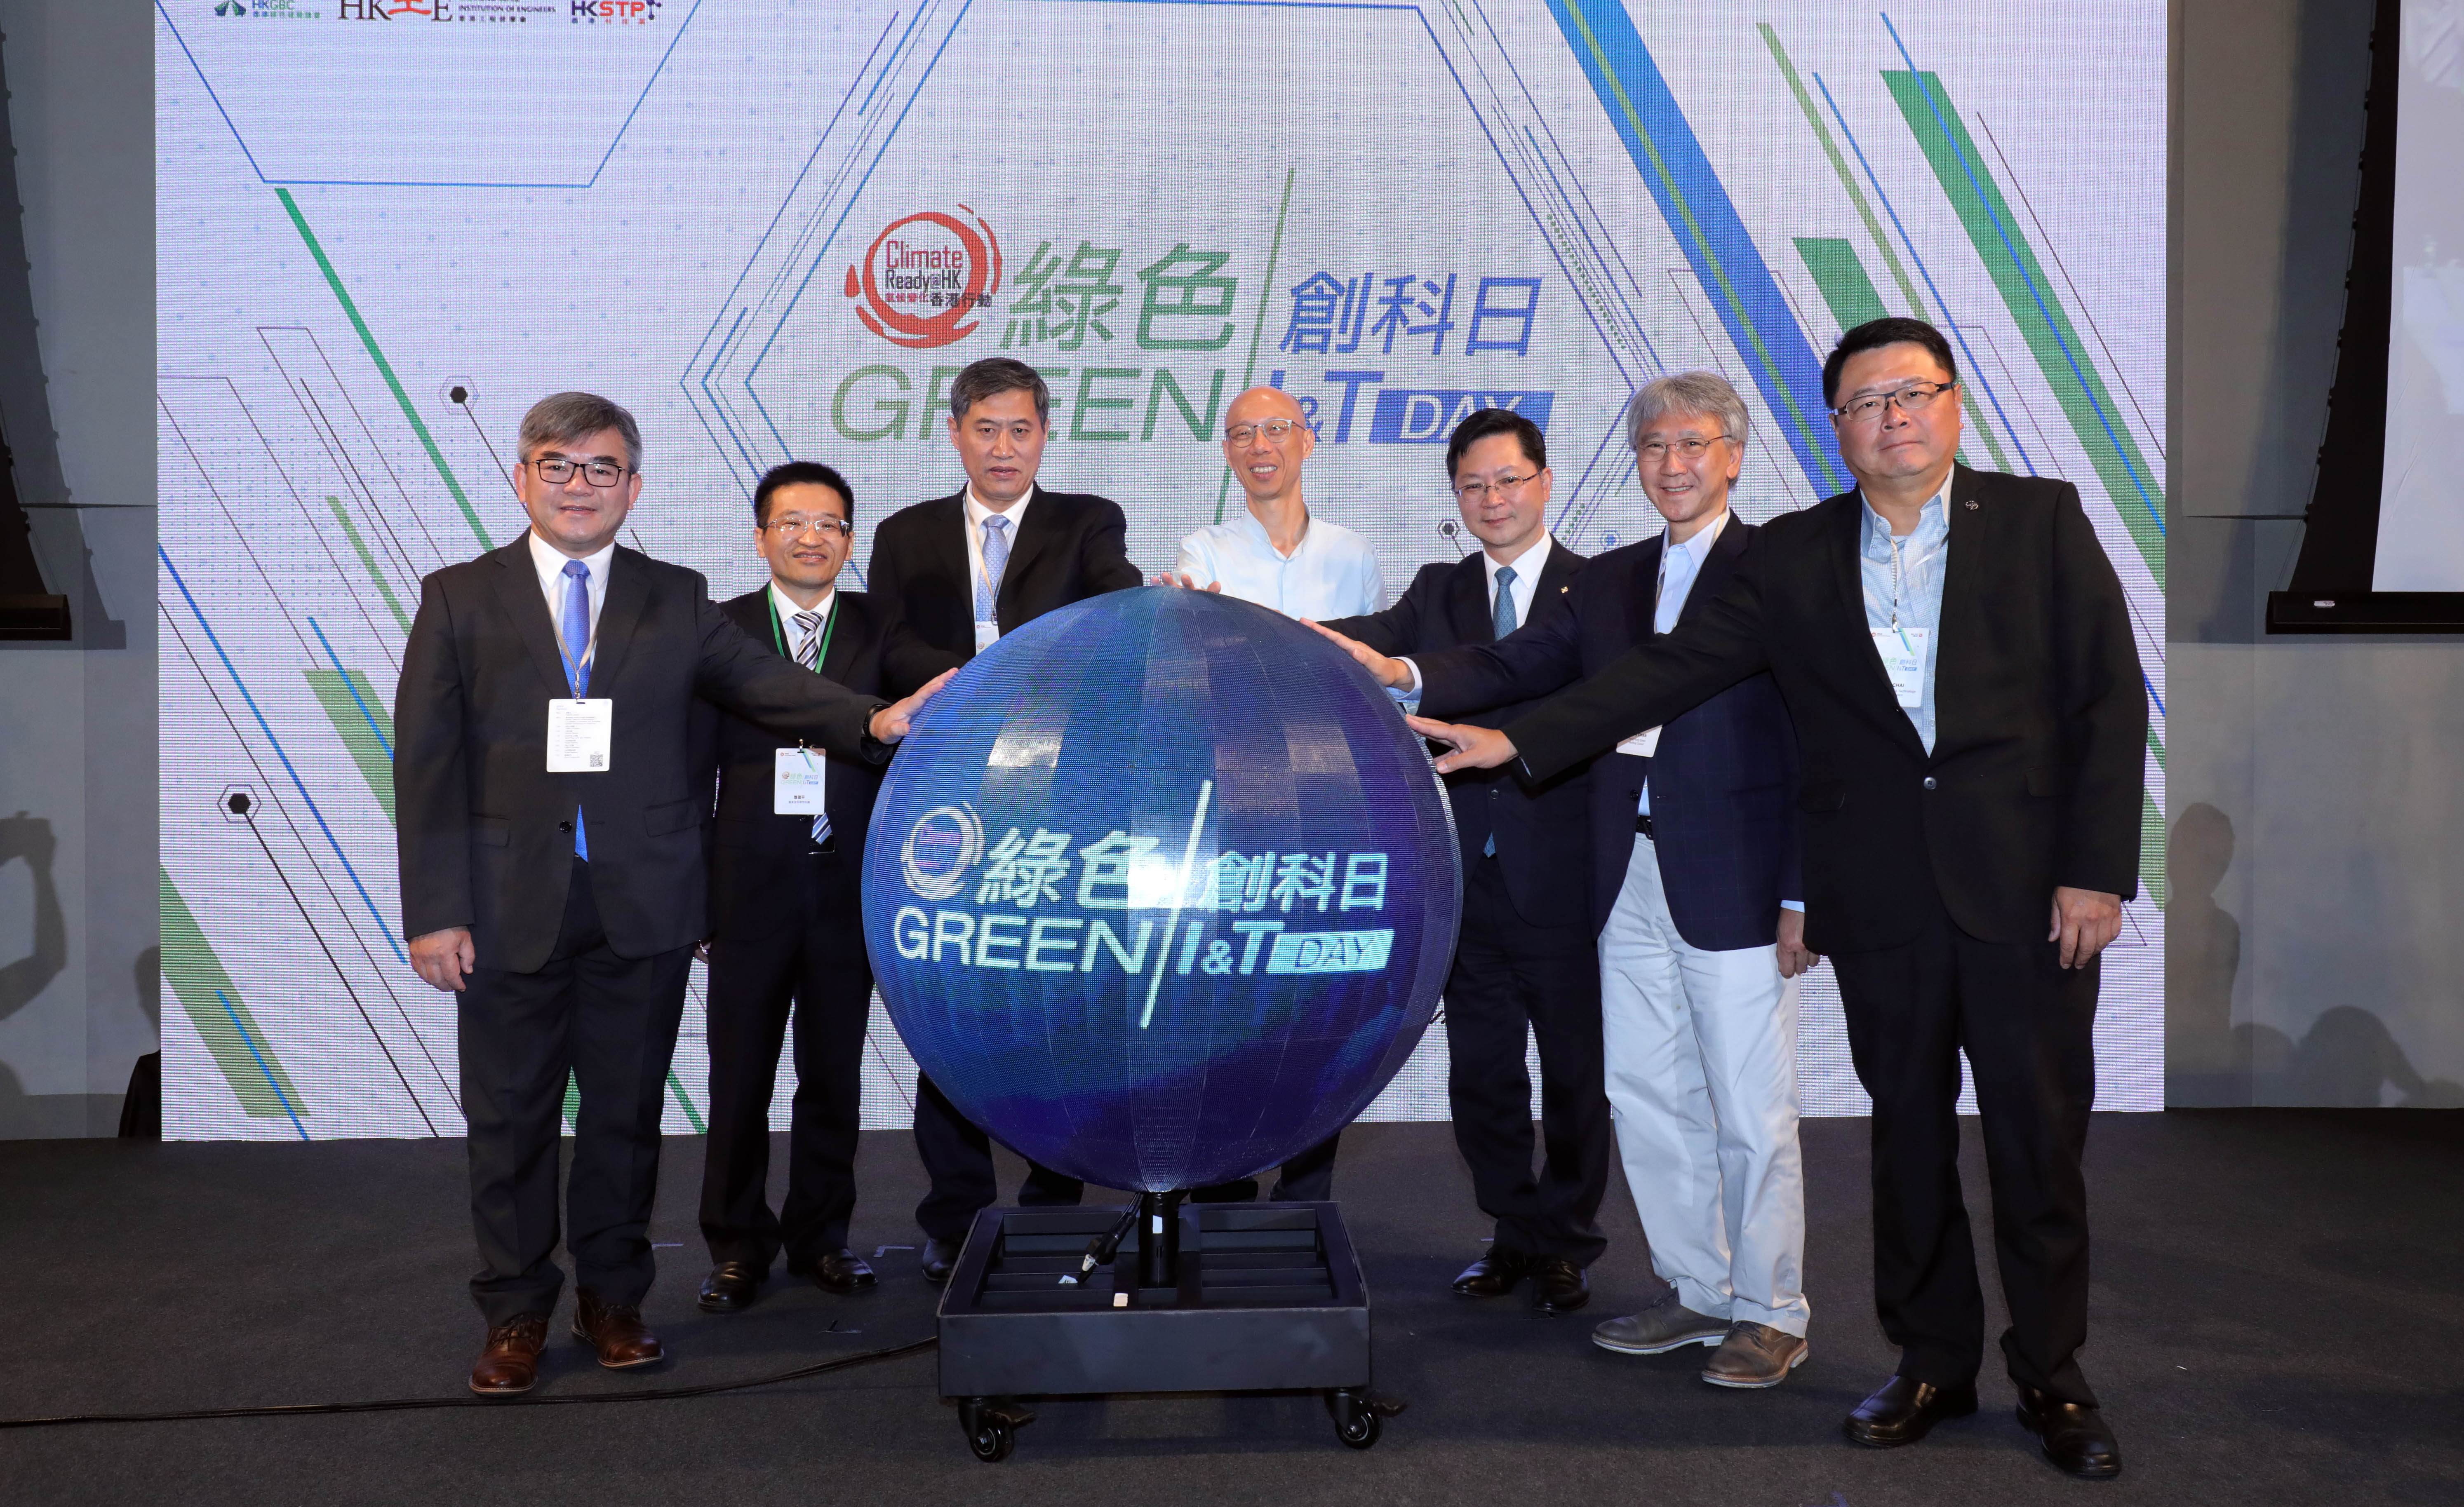 2019年8月6日 - 機電工程署(機電署)於綠色創科日簽署合作備忘錄以加強粵港創新及科技合作